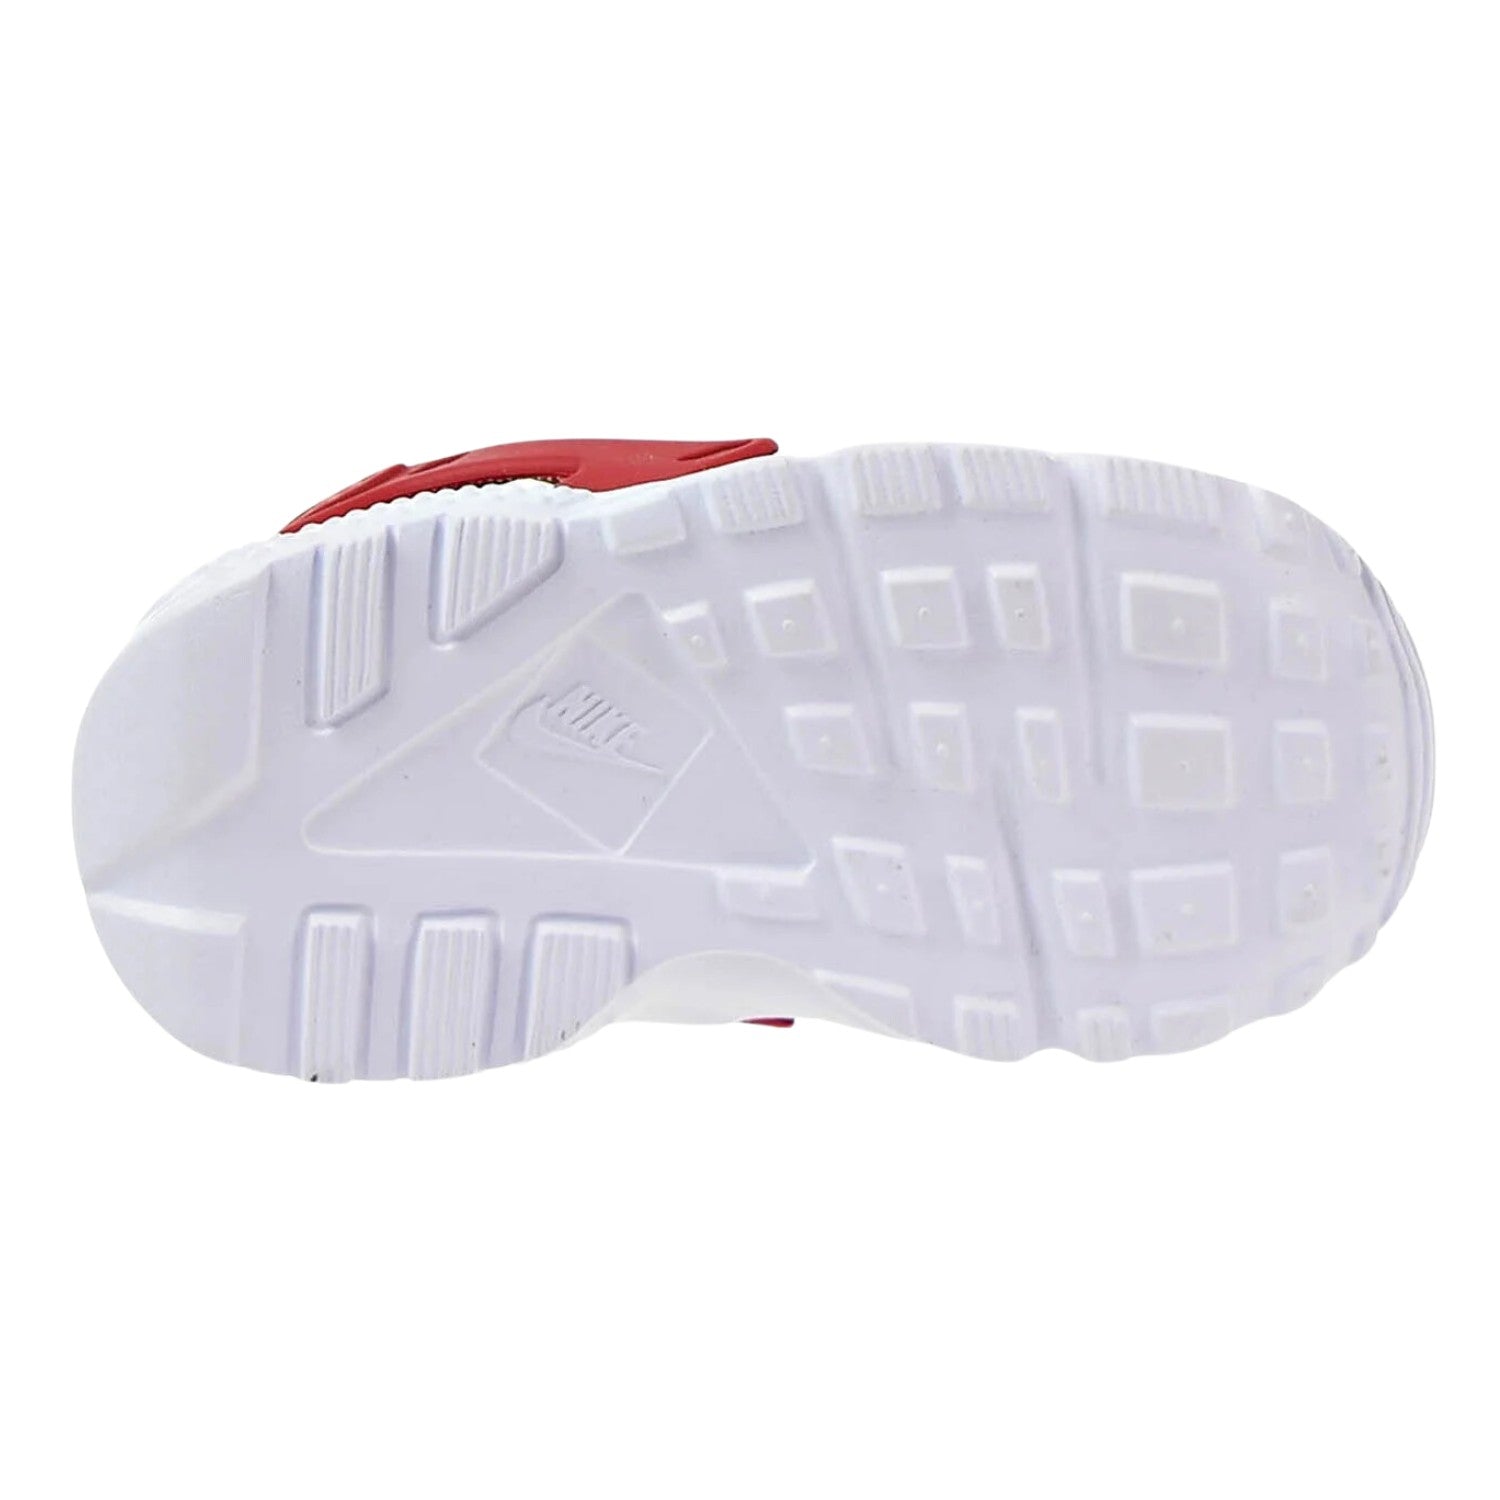 Nike Huarache Run (Td) Toddlers Style : 704950